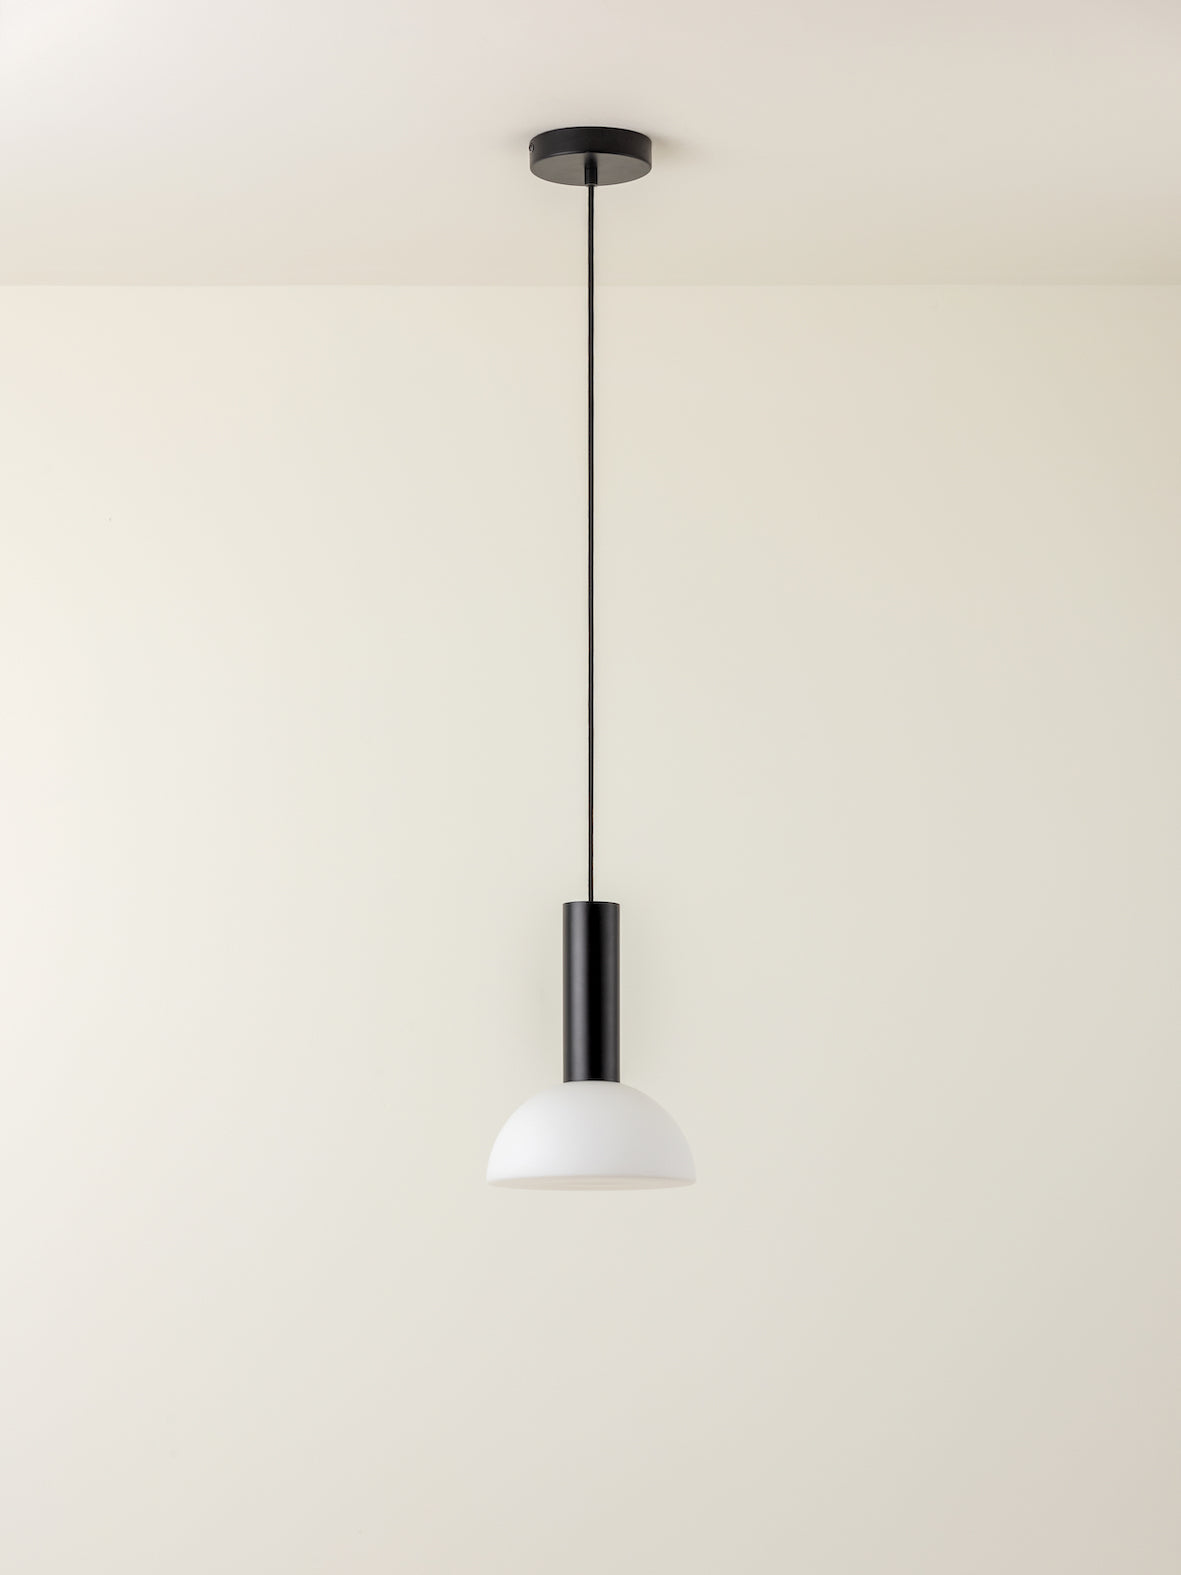 Silio - 1 light matt black and opal pendant | Ceiling Light | Lights & Lamps | UK | Modern Affordable Designer Lighting